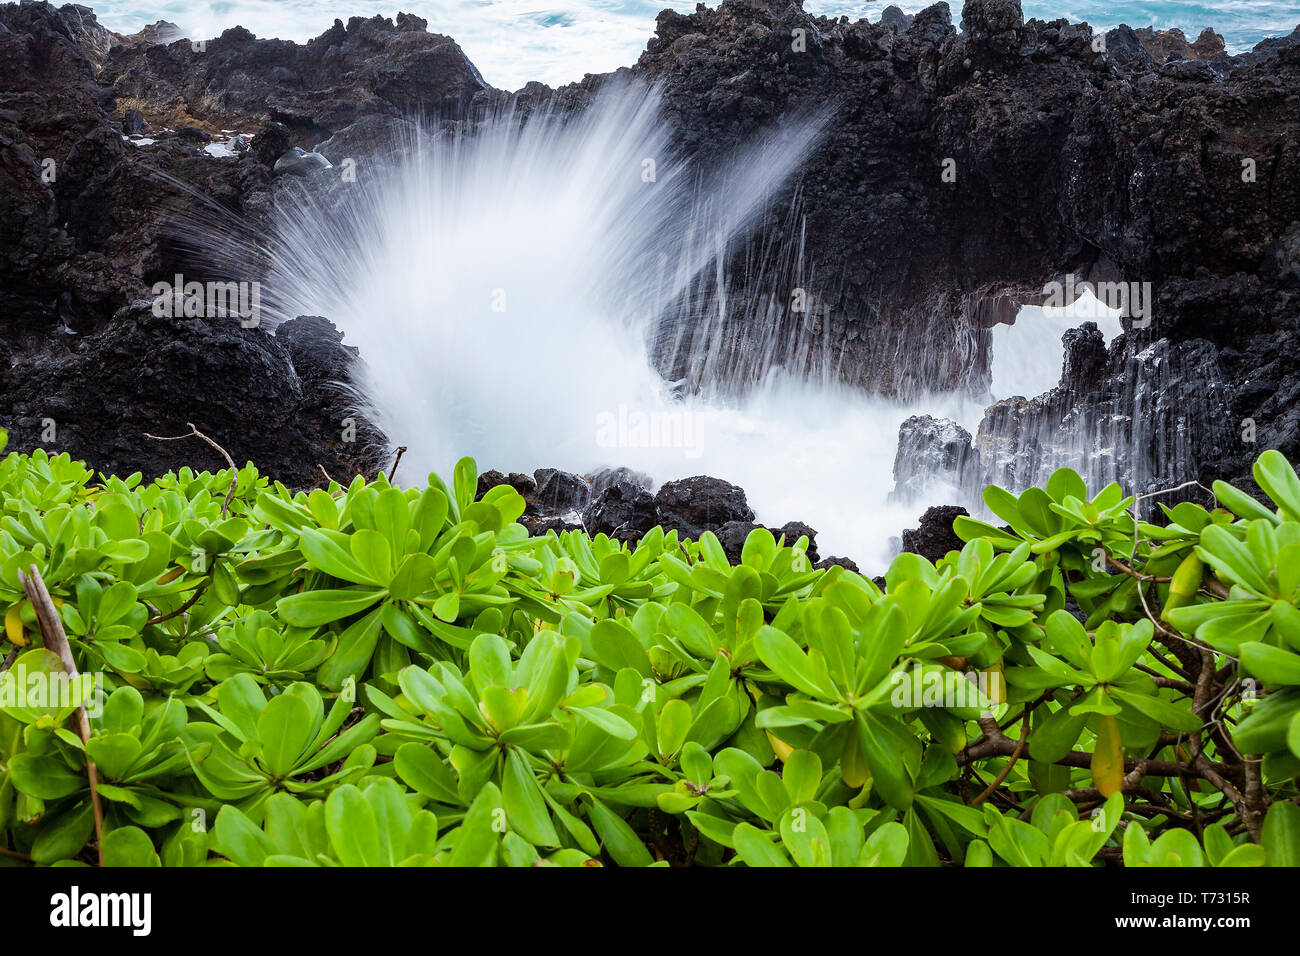 Olas del mar a través de arco en la roca de la lava, Wai'anapapanapa State Park, Maui, Hawaii, EE.UU. Foto de stock